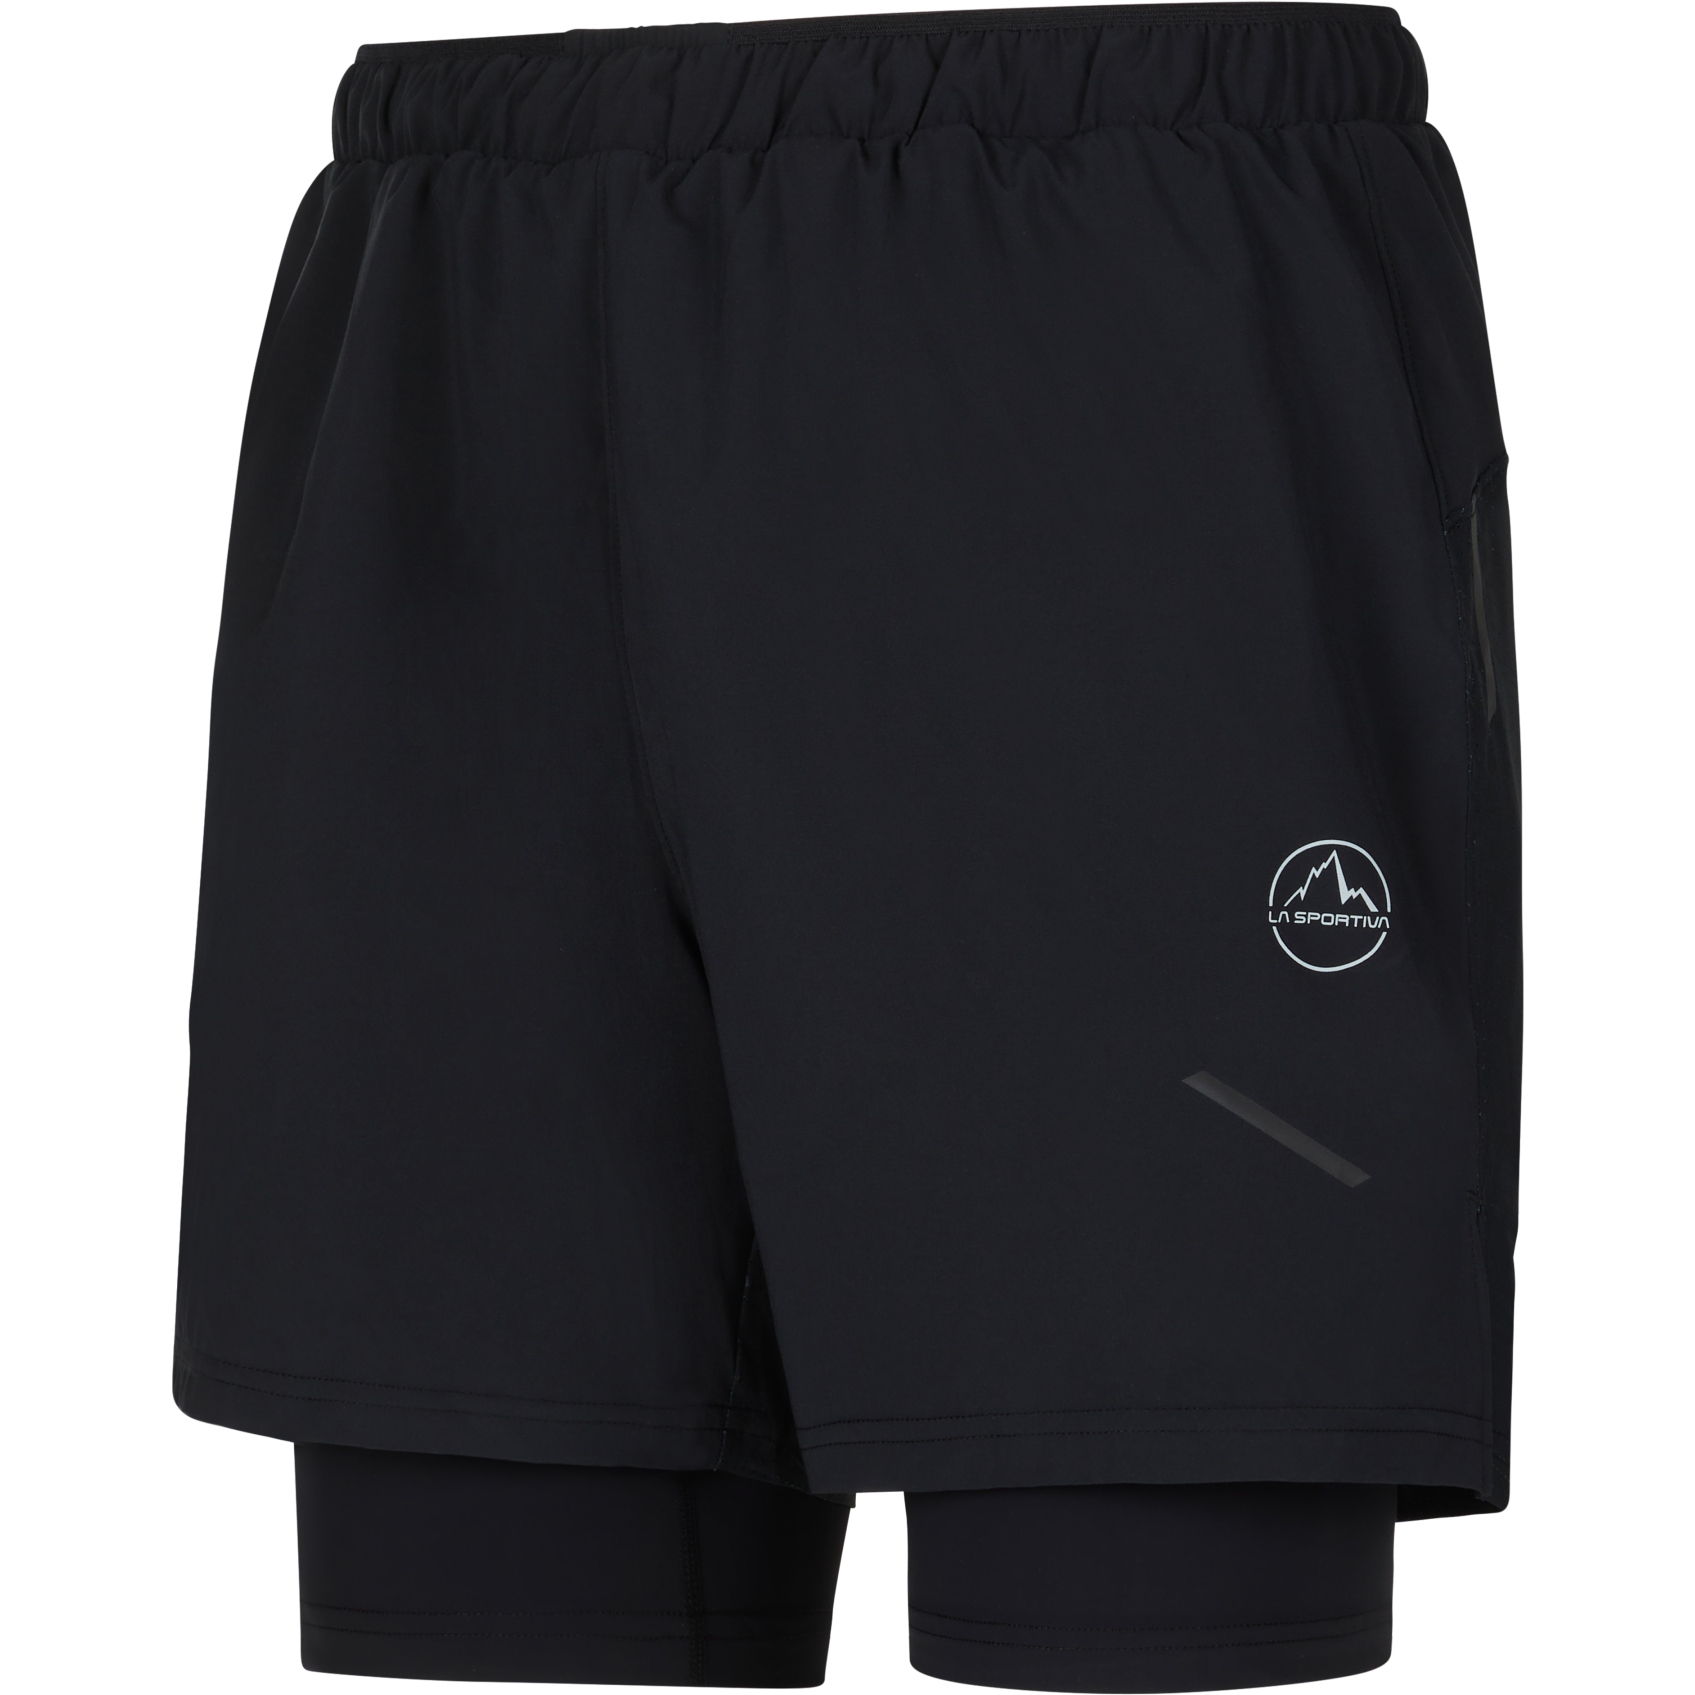 Produktbild von La Sportiva Trail Bite Shorts Herren - Black/Cloud